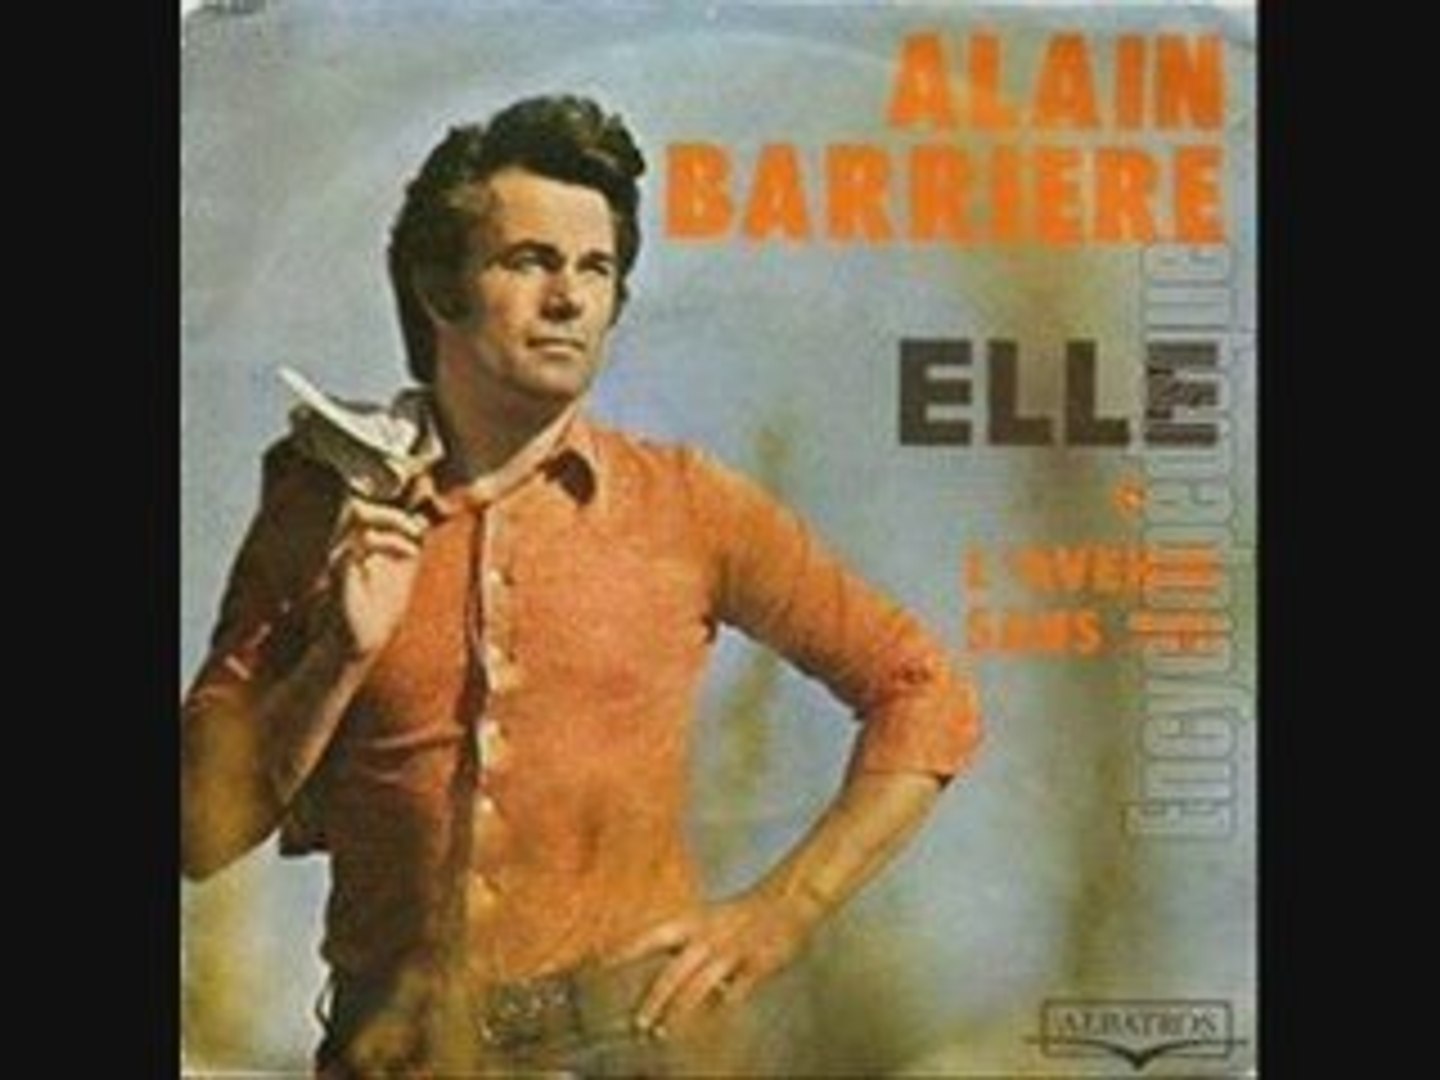 Alain Barrière Elle (1971) - Vidéo Dailymotion